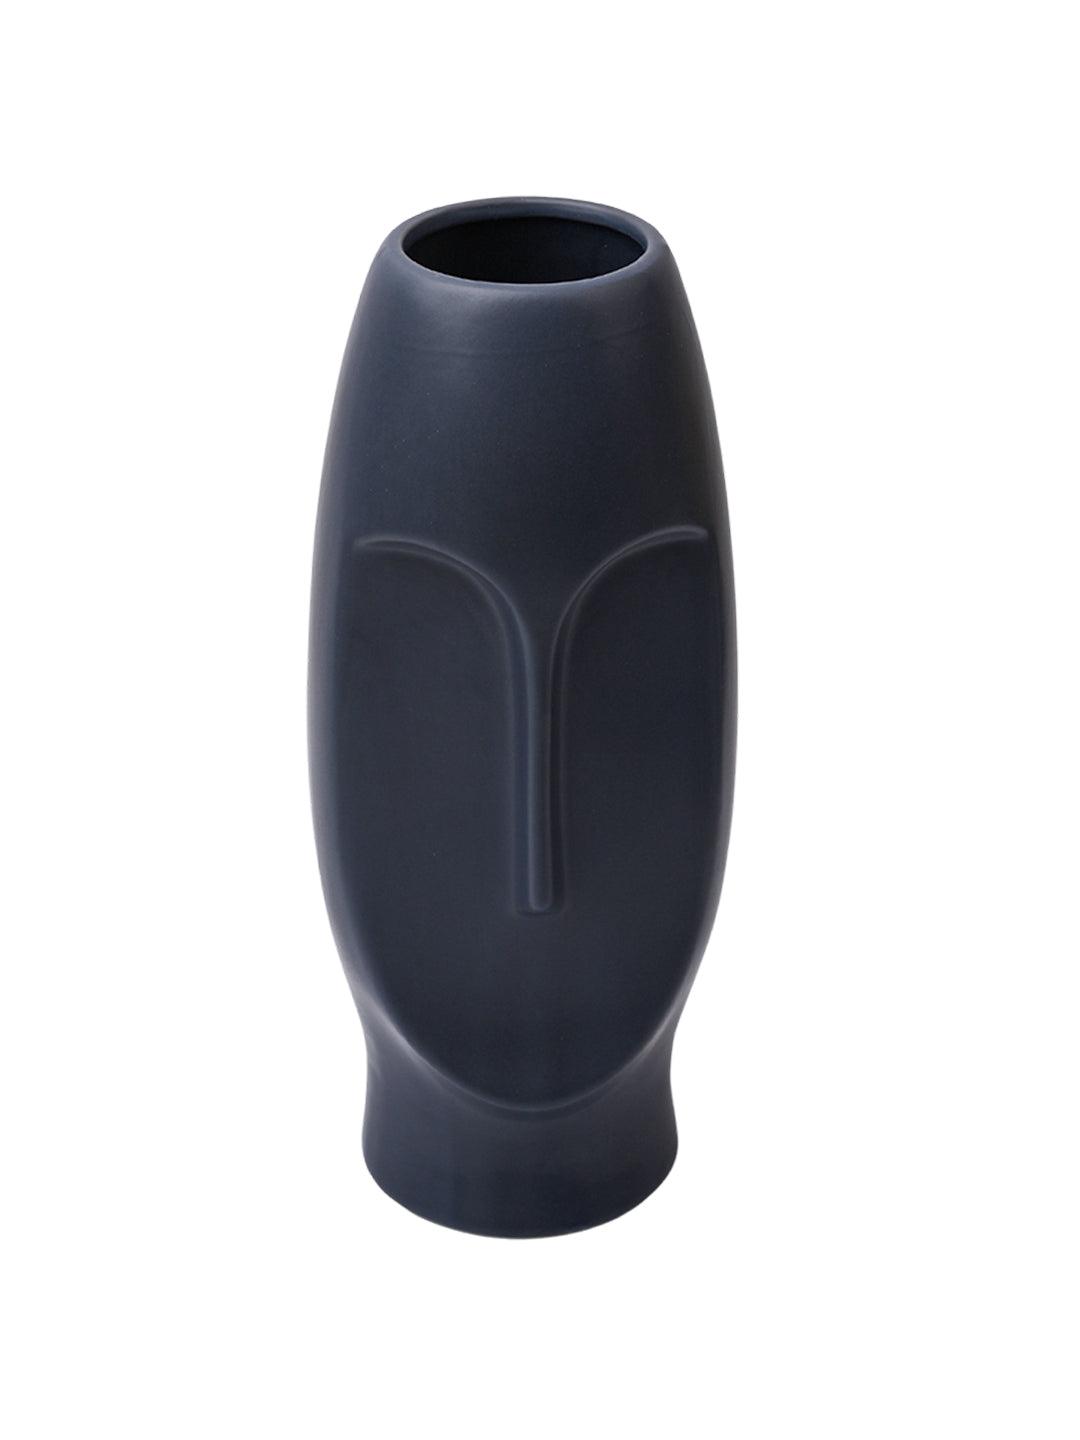 Stylish Black Face Shape Vase - MARKET99